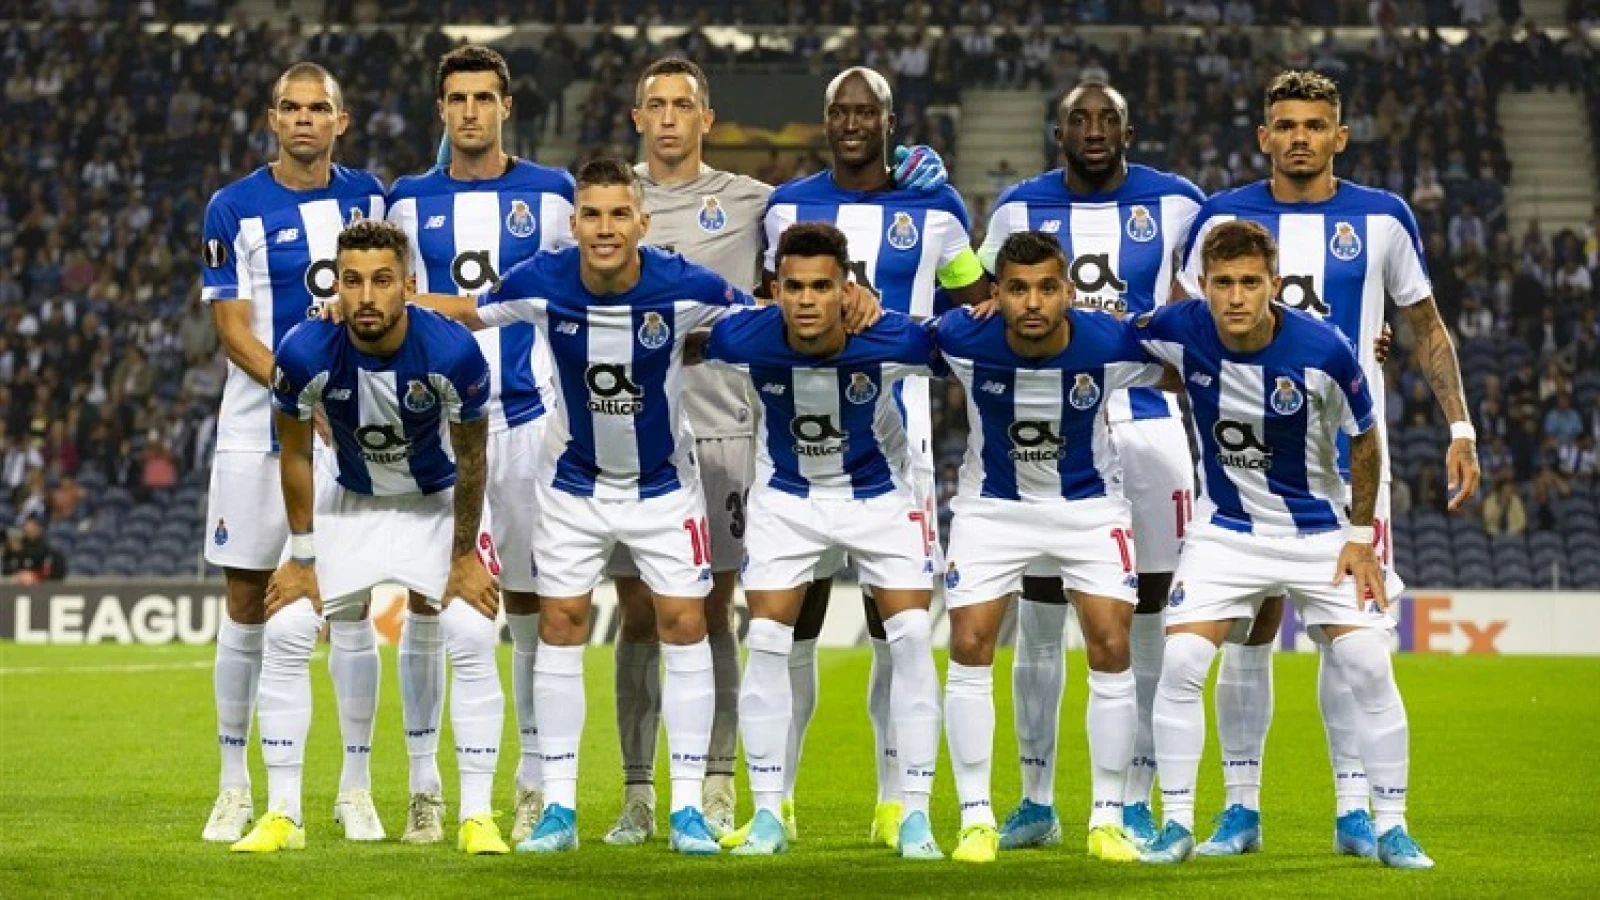 OVERZICHT | Dit is de selectie van FC Porto tegen Feyenoord